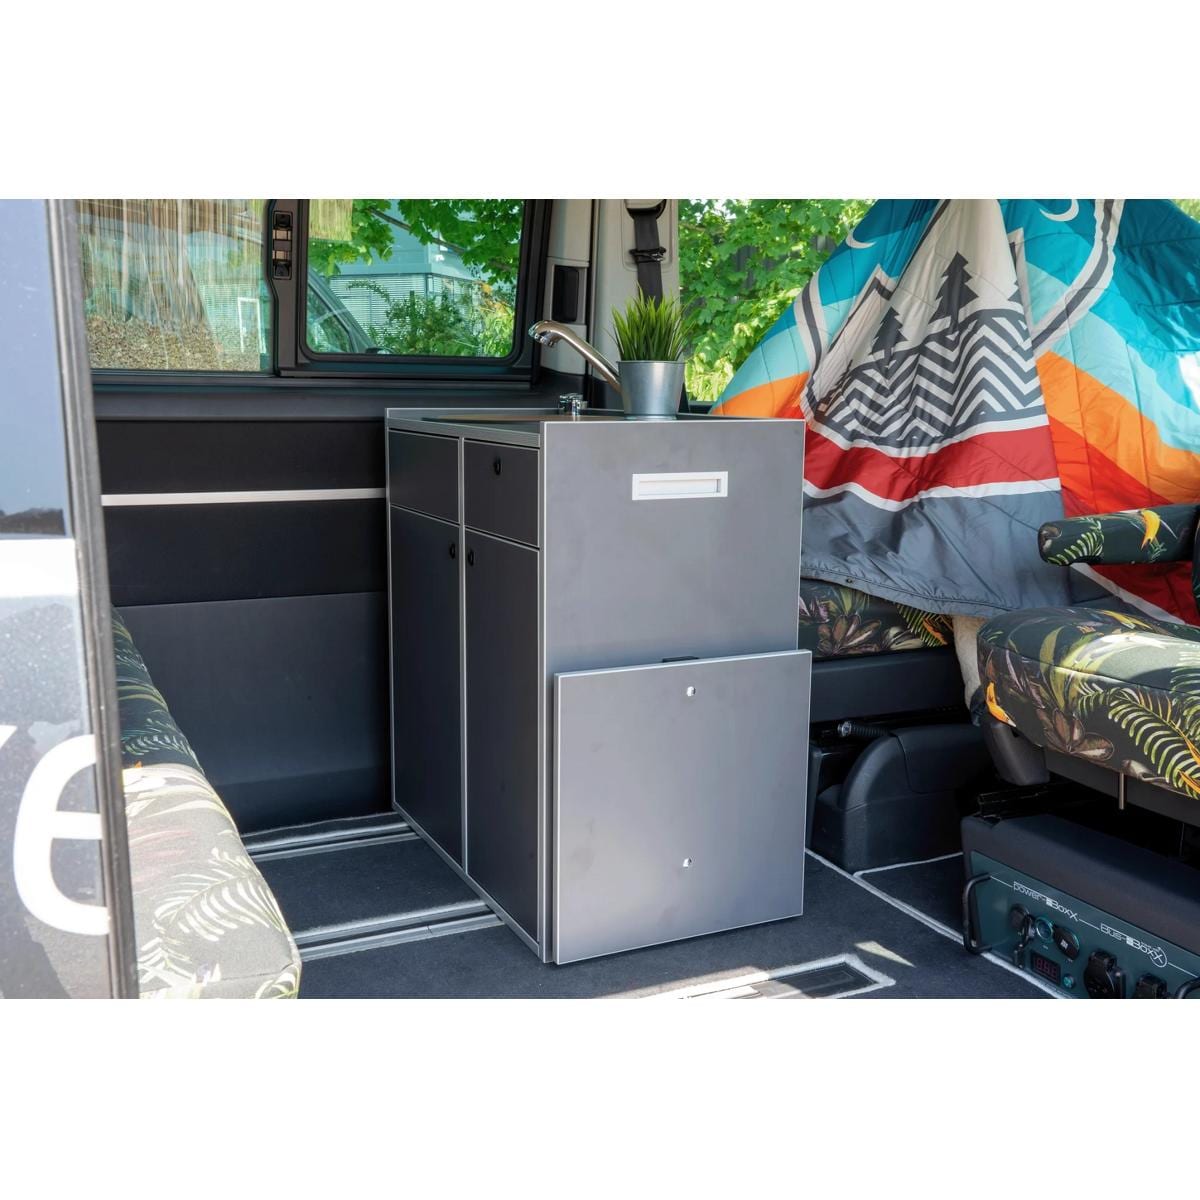 Bus-Boxx Zurrösen für VW T5/T6, 4er-Set bei Camping Wagner Campingzubehör